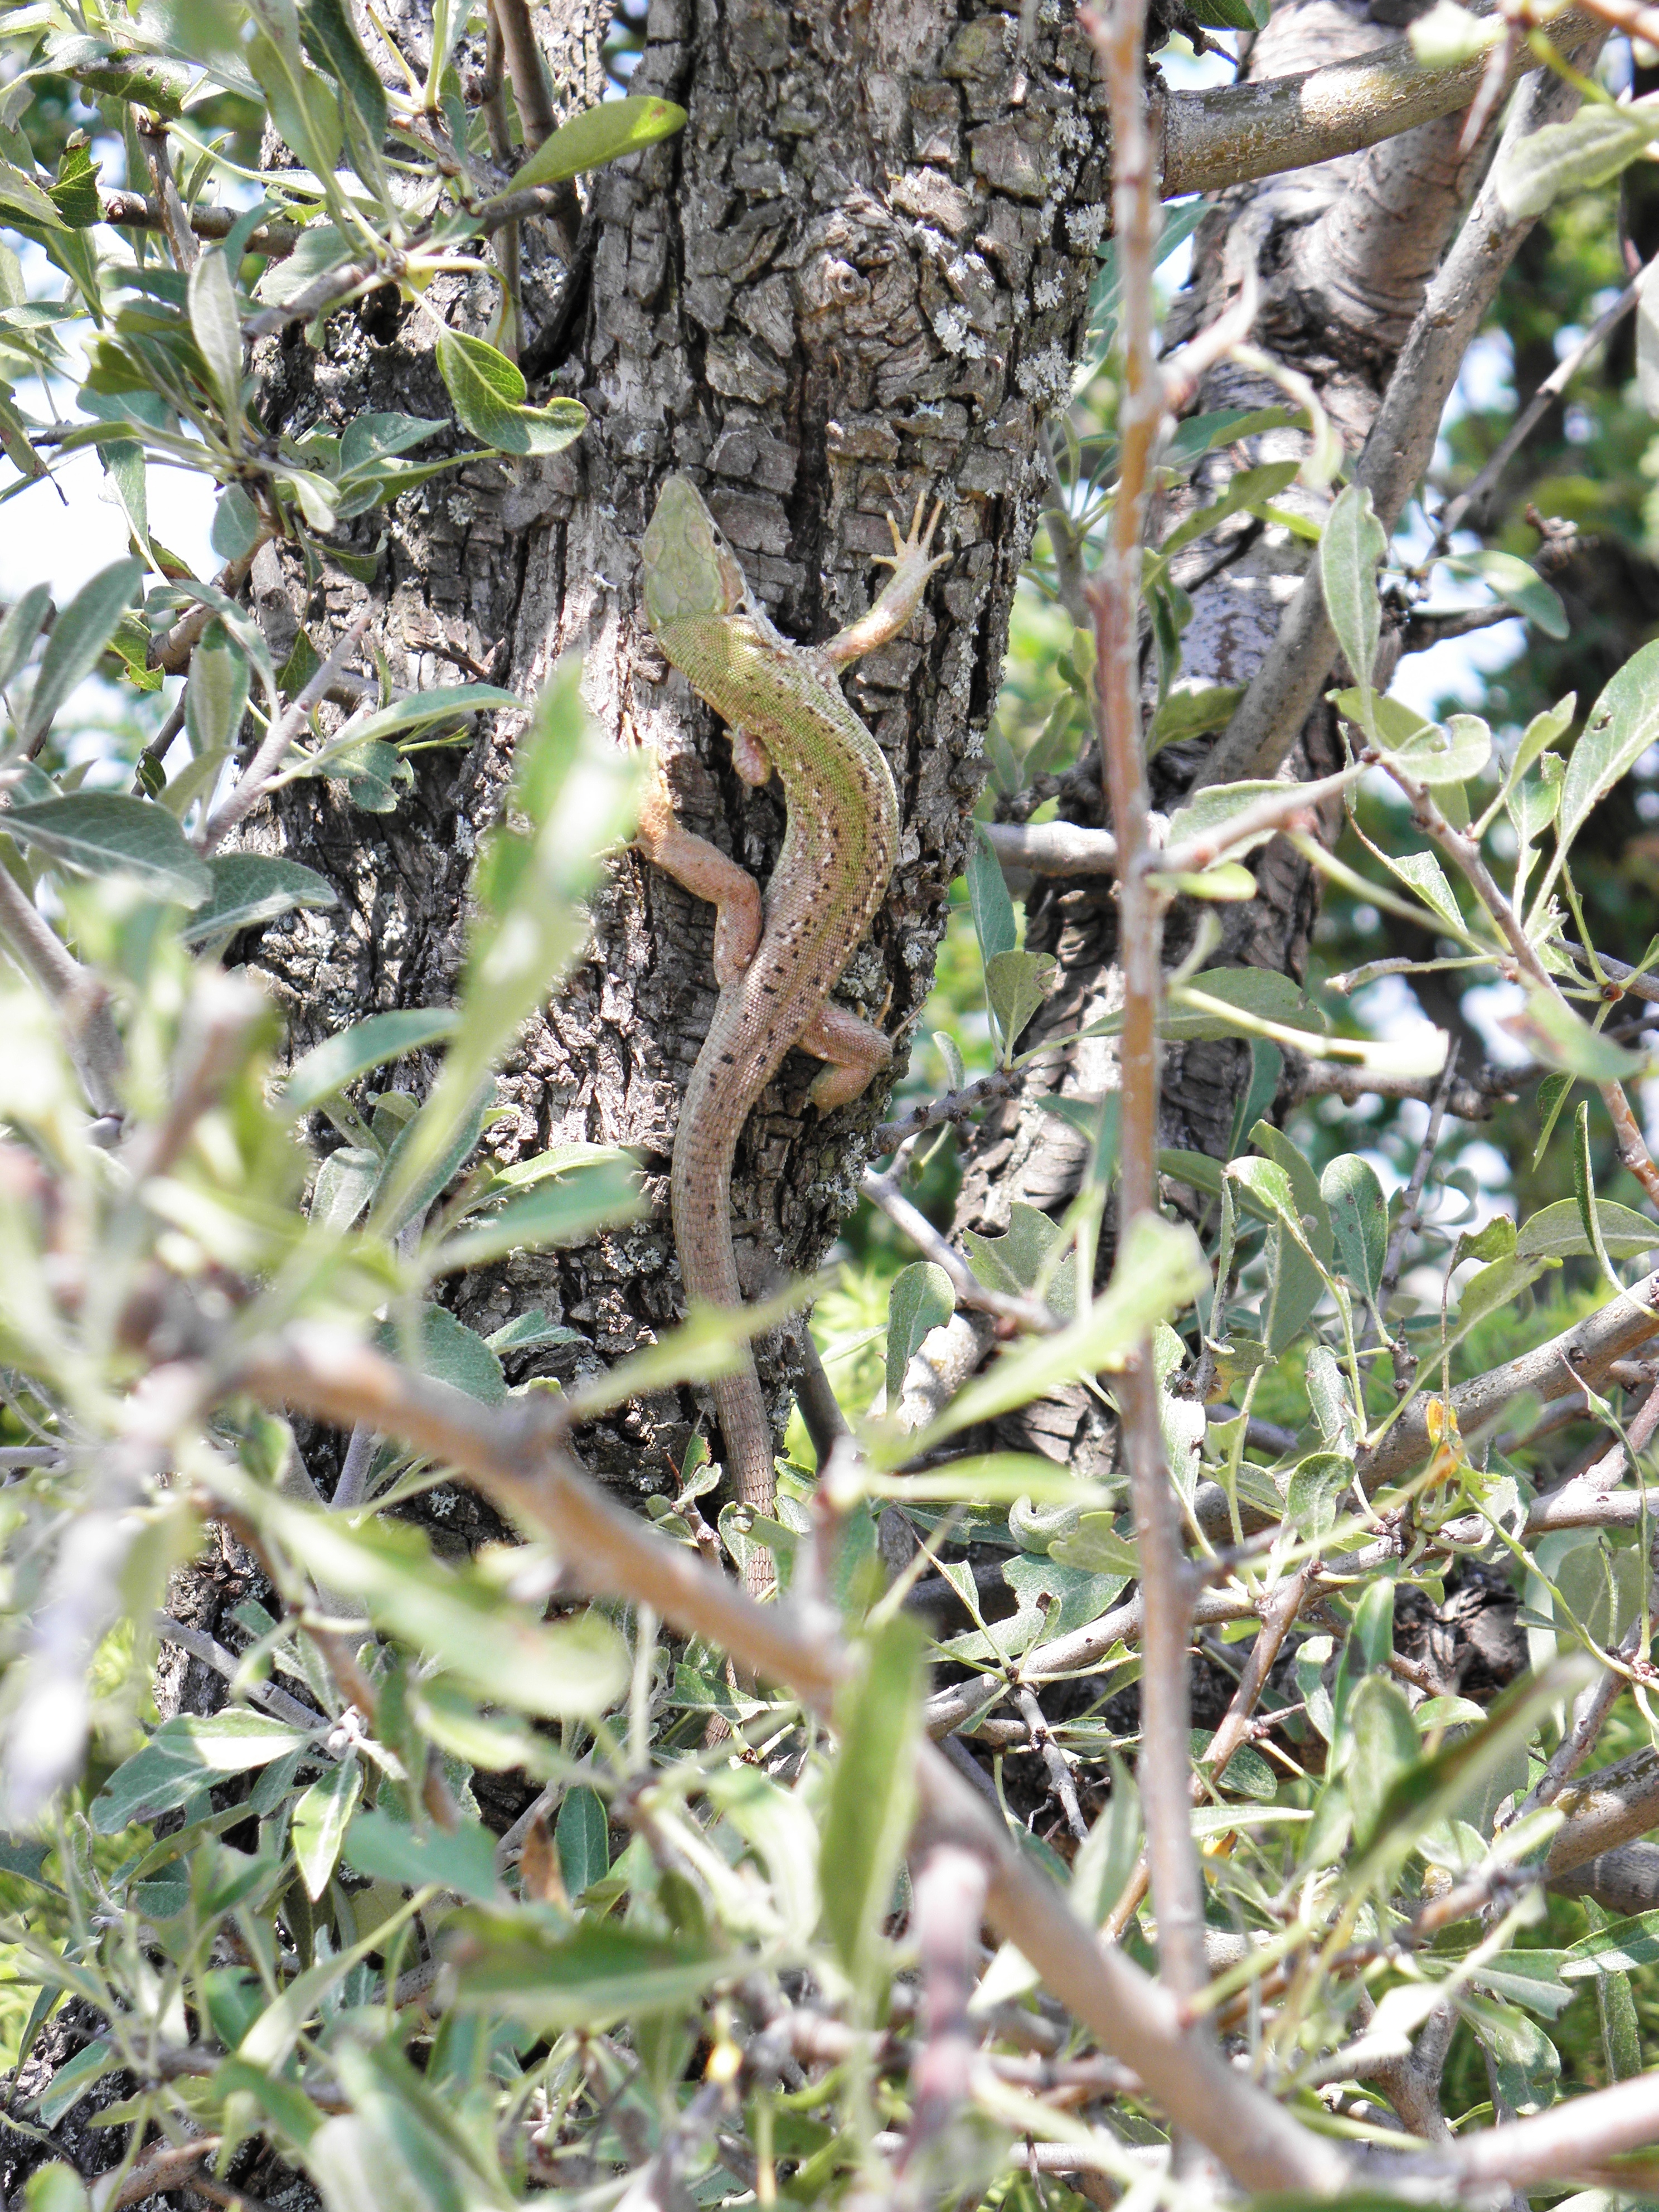 Green lizard photo